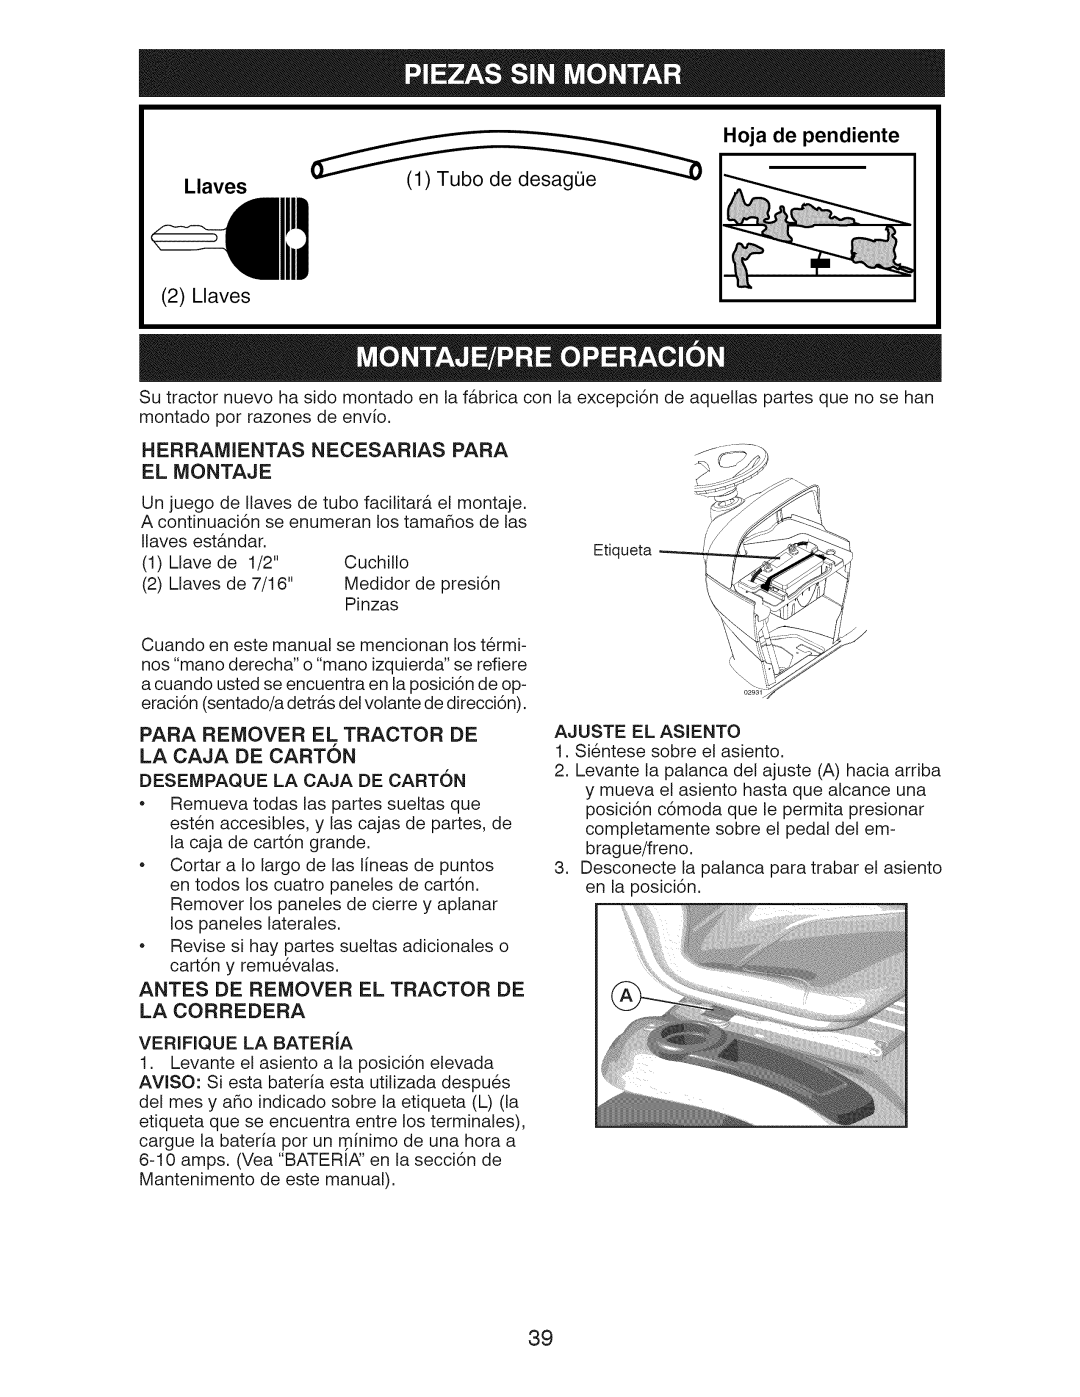 Craftsman 917.289283 owner manual Hoja de pendiente, Llaves, Tubo de desagOe, Herramientas Necesarias Para El Montaje 